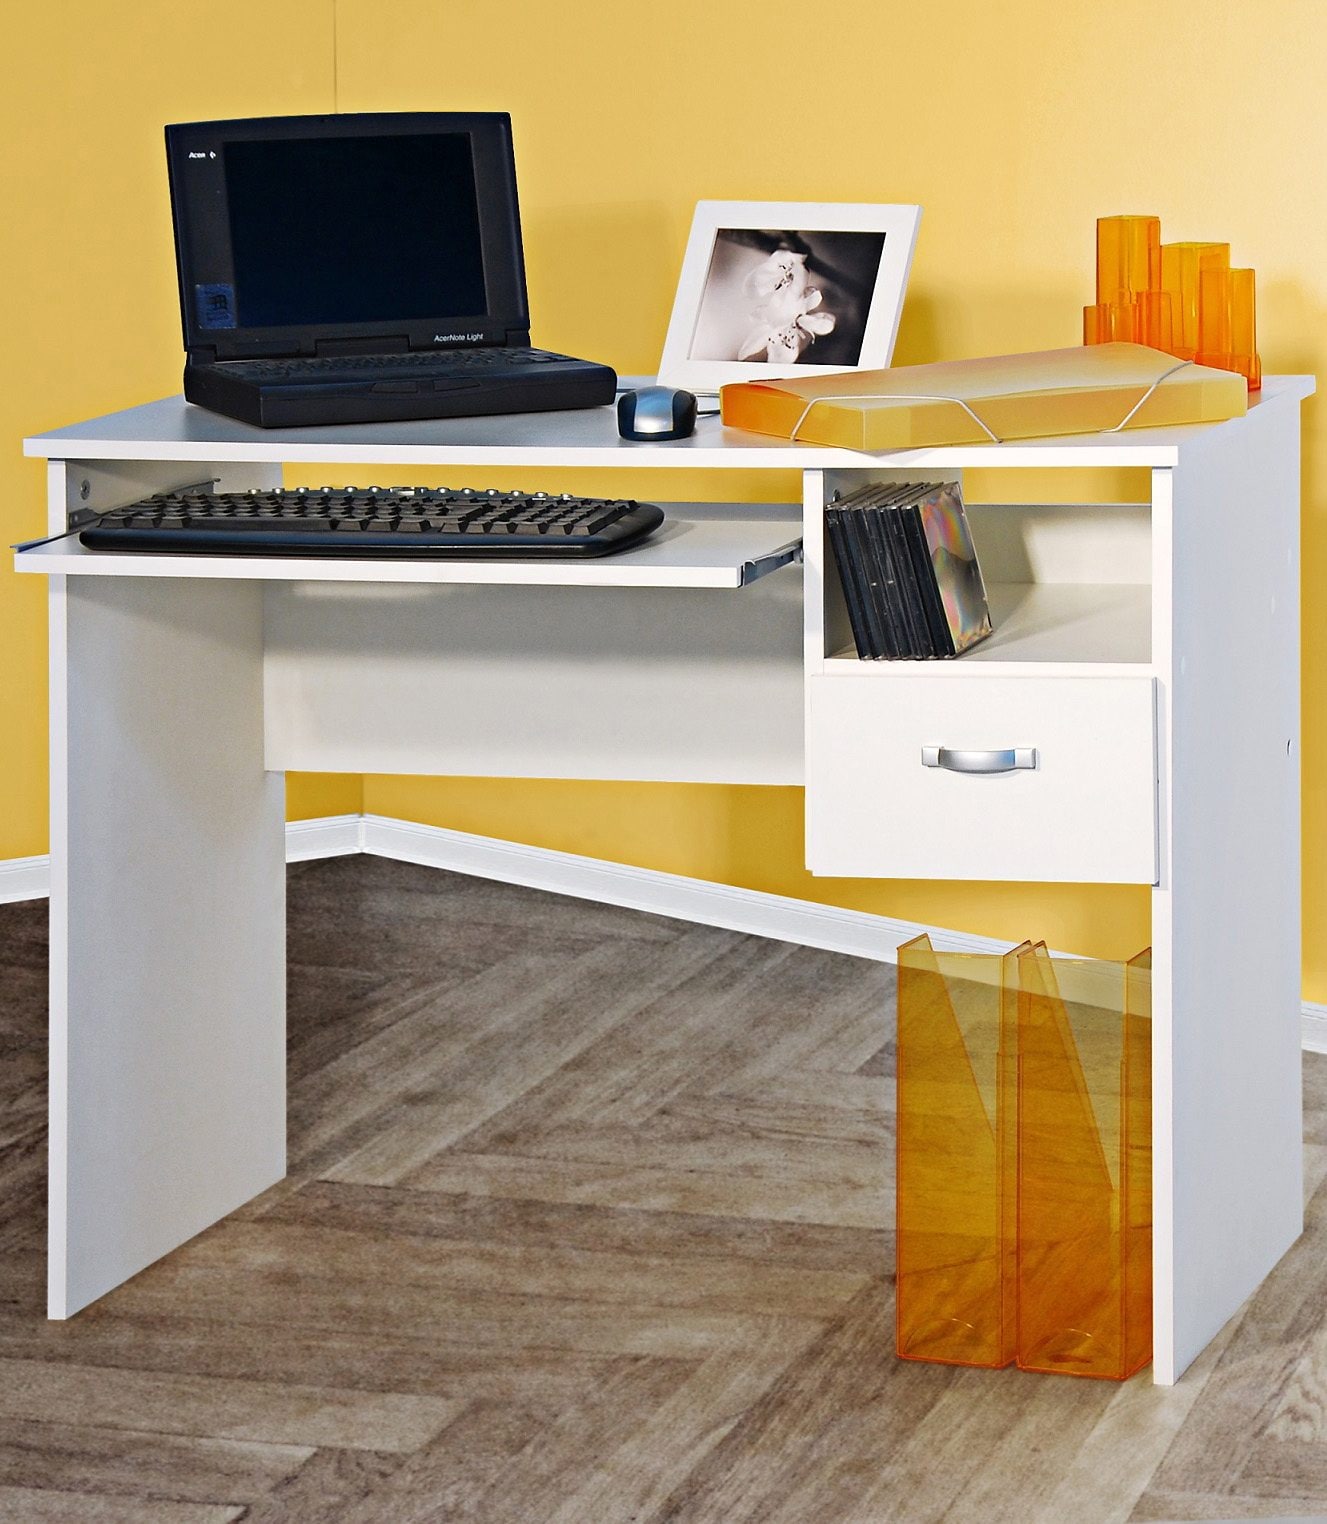 VOGL Möbelfabrik Schreibtisch »Flo 1« kaufen